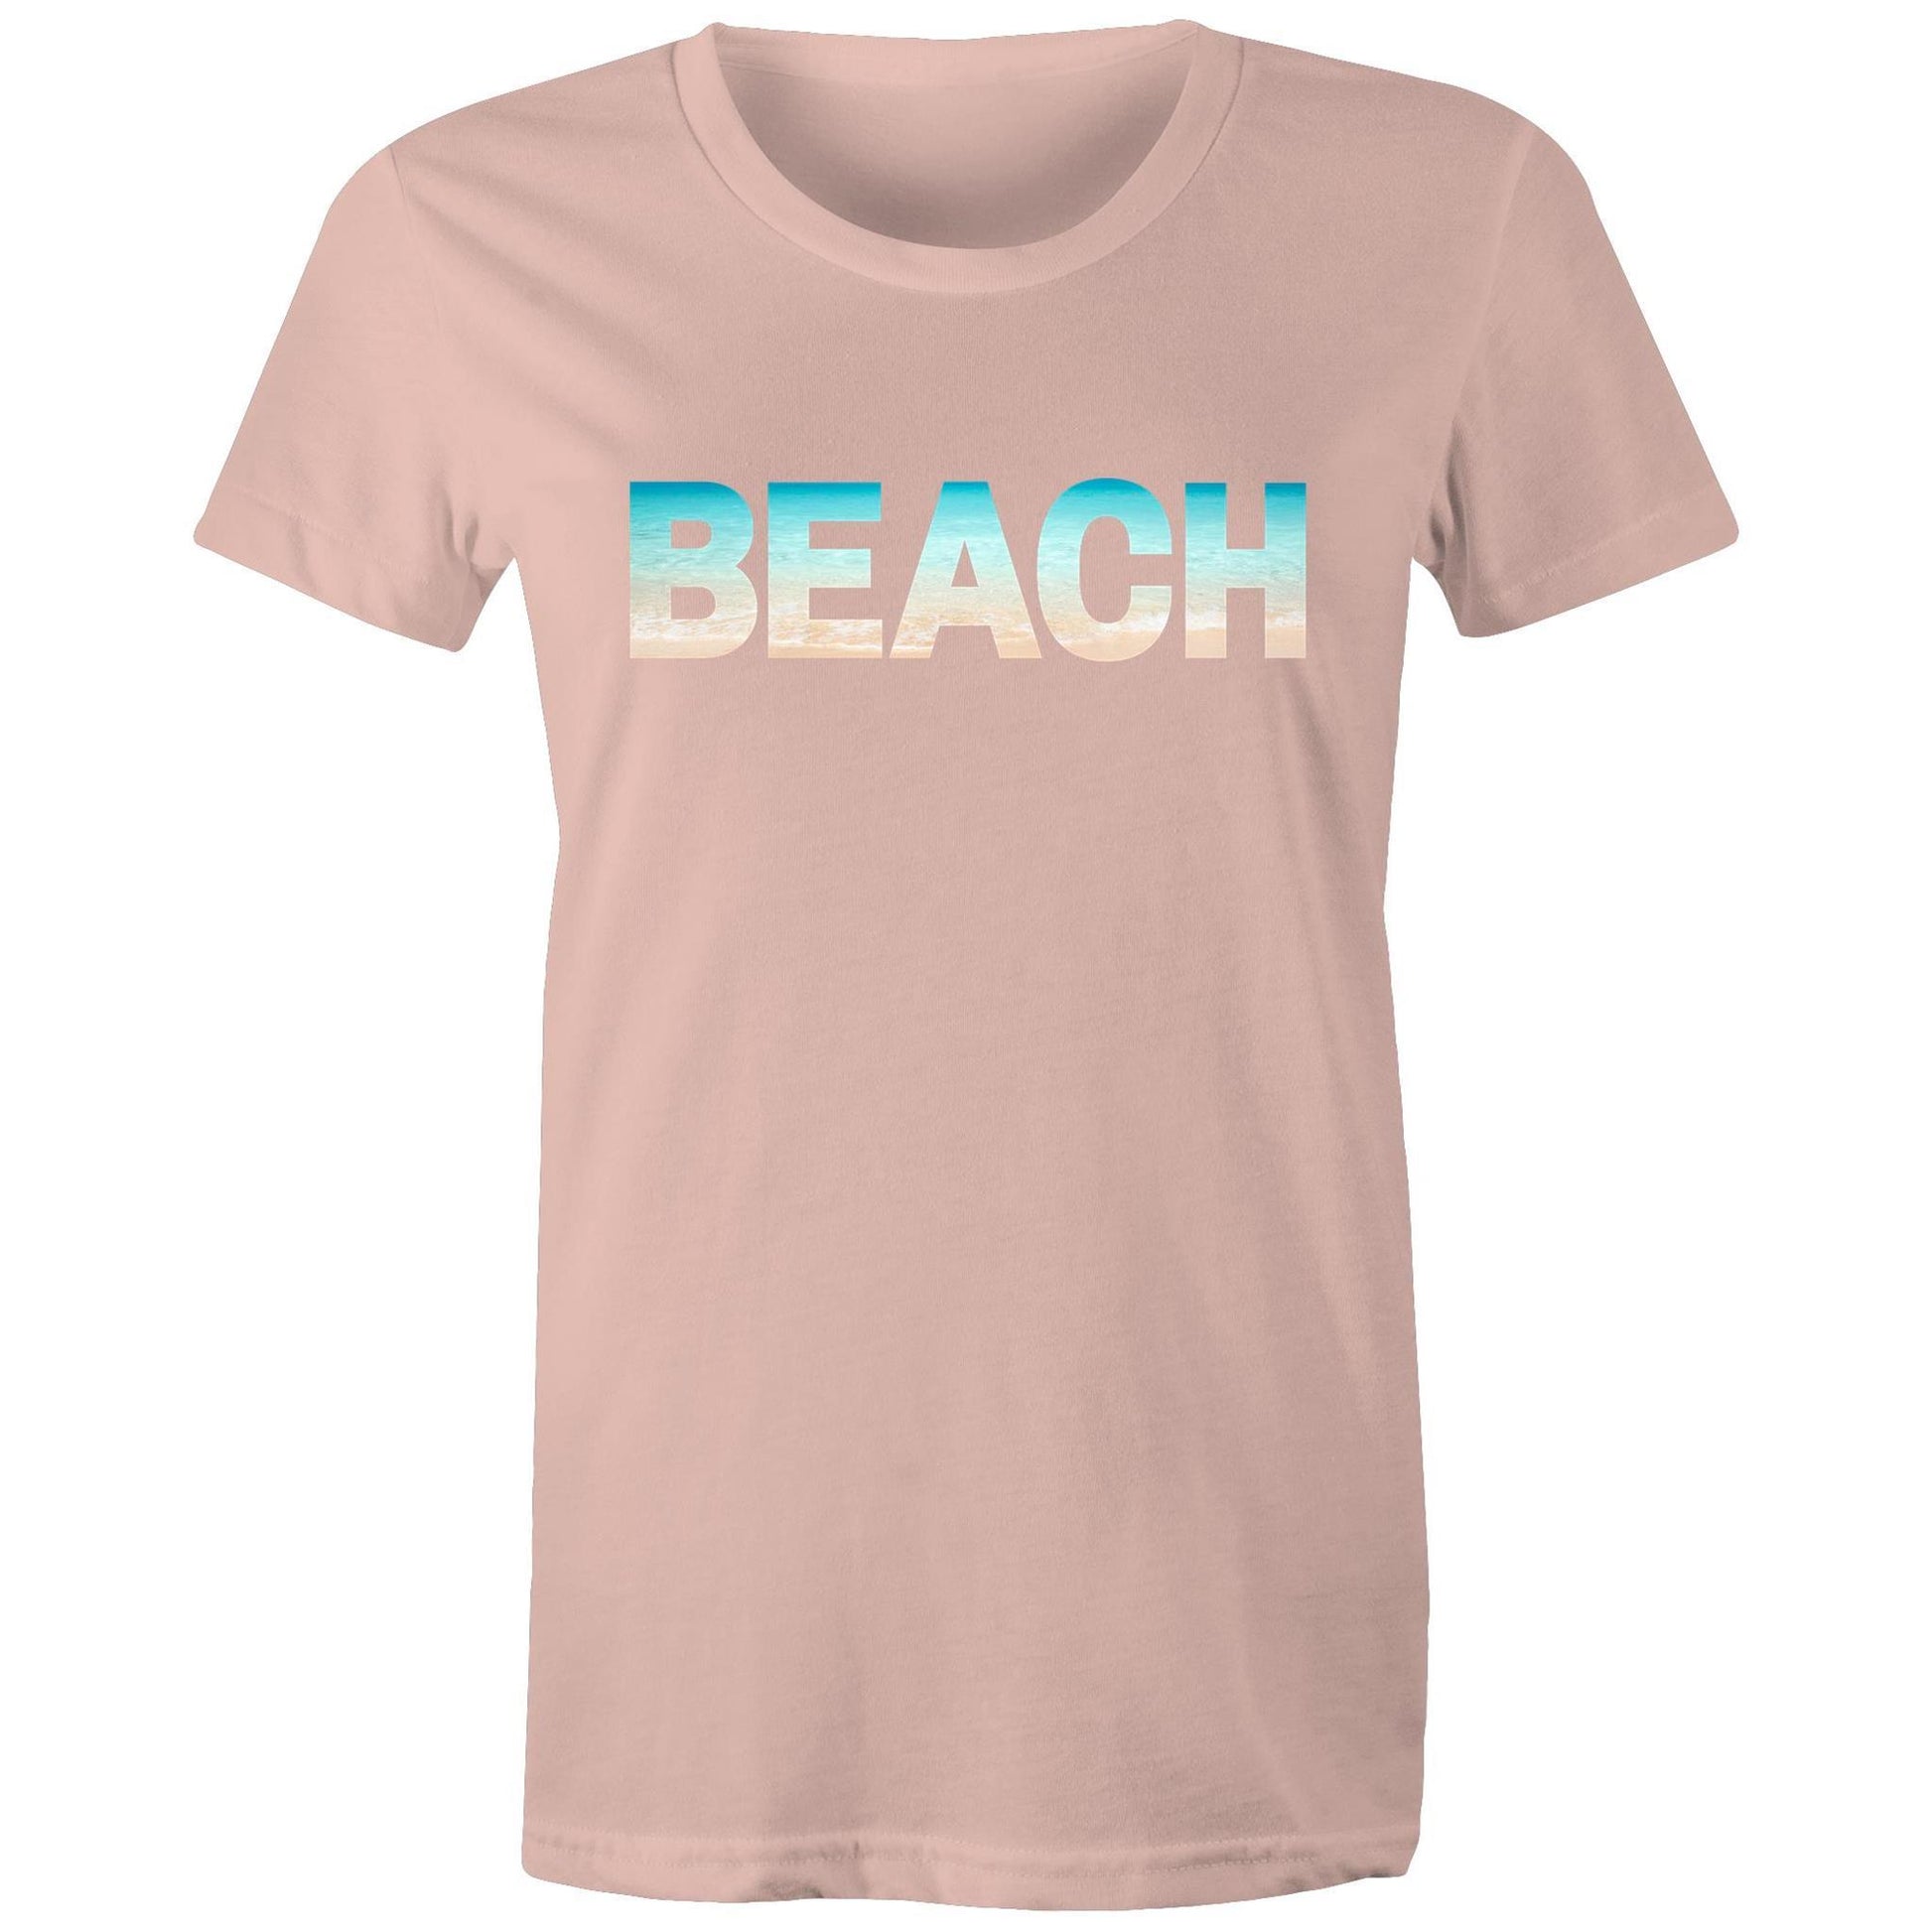 Beach - Women's T-shirt Pale Pink Womens T-shirt Summer Womens